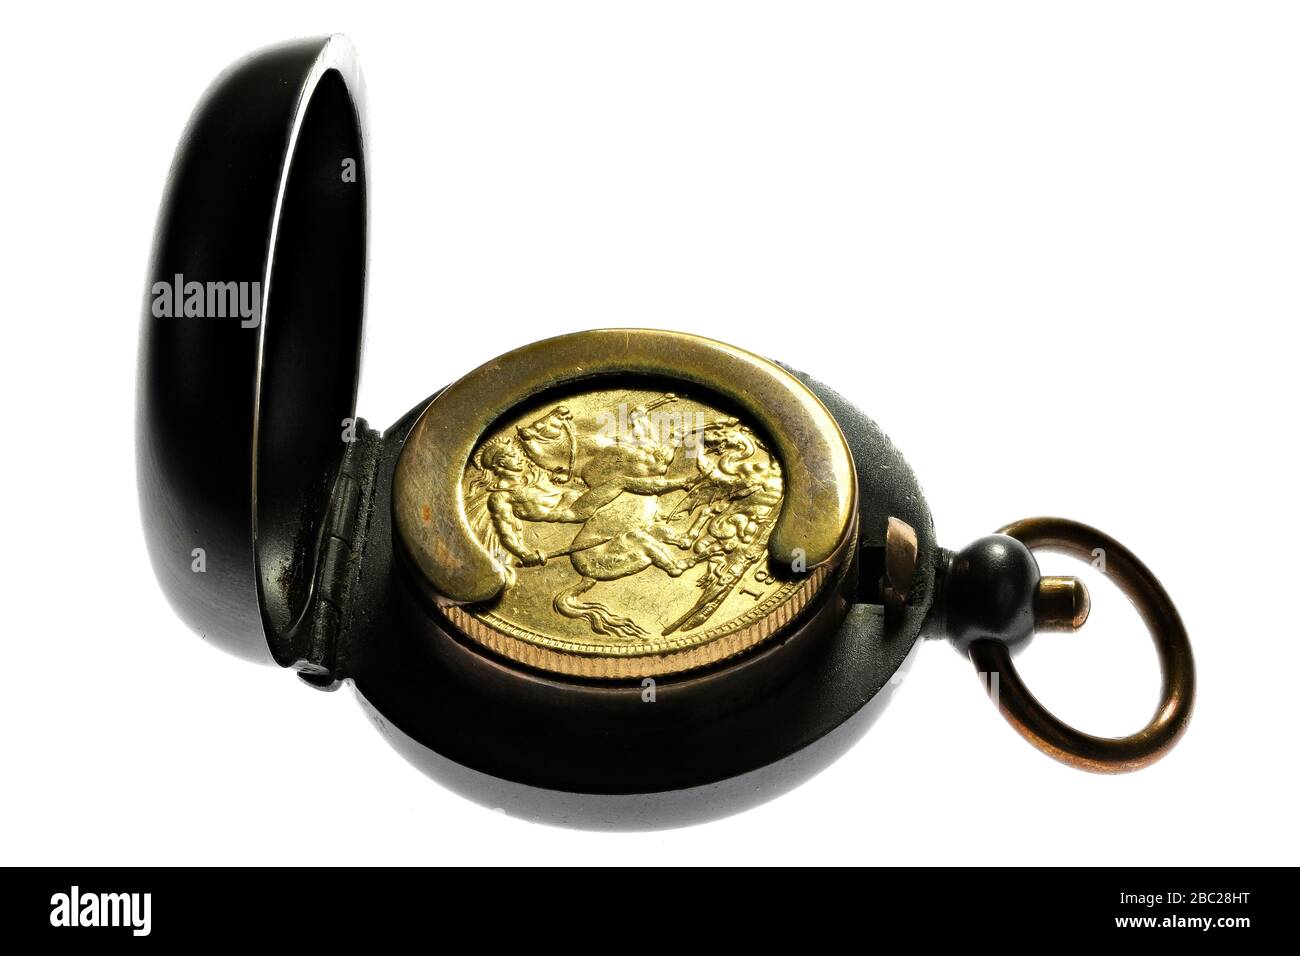 Pièce d'or pleine souveraine britannique dans un boîtier en métal armé isolé sur fond blanc Banque D'Images